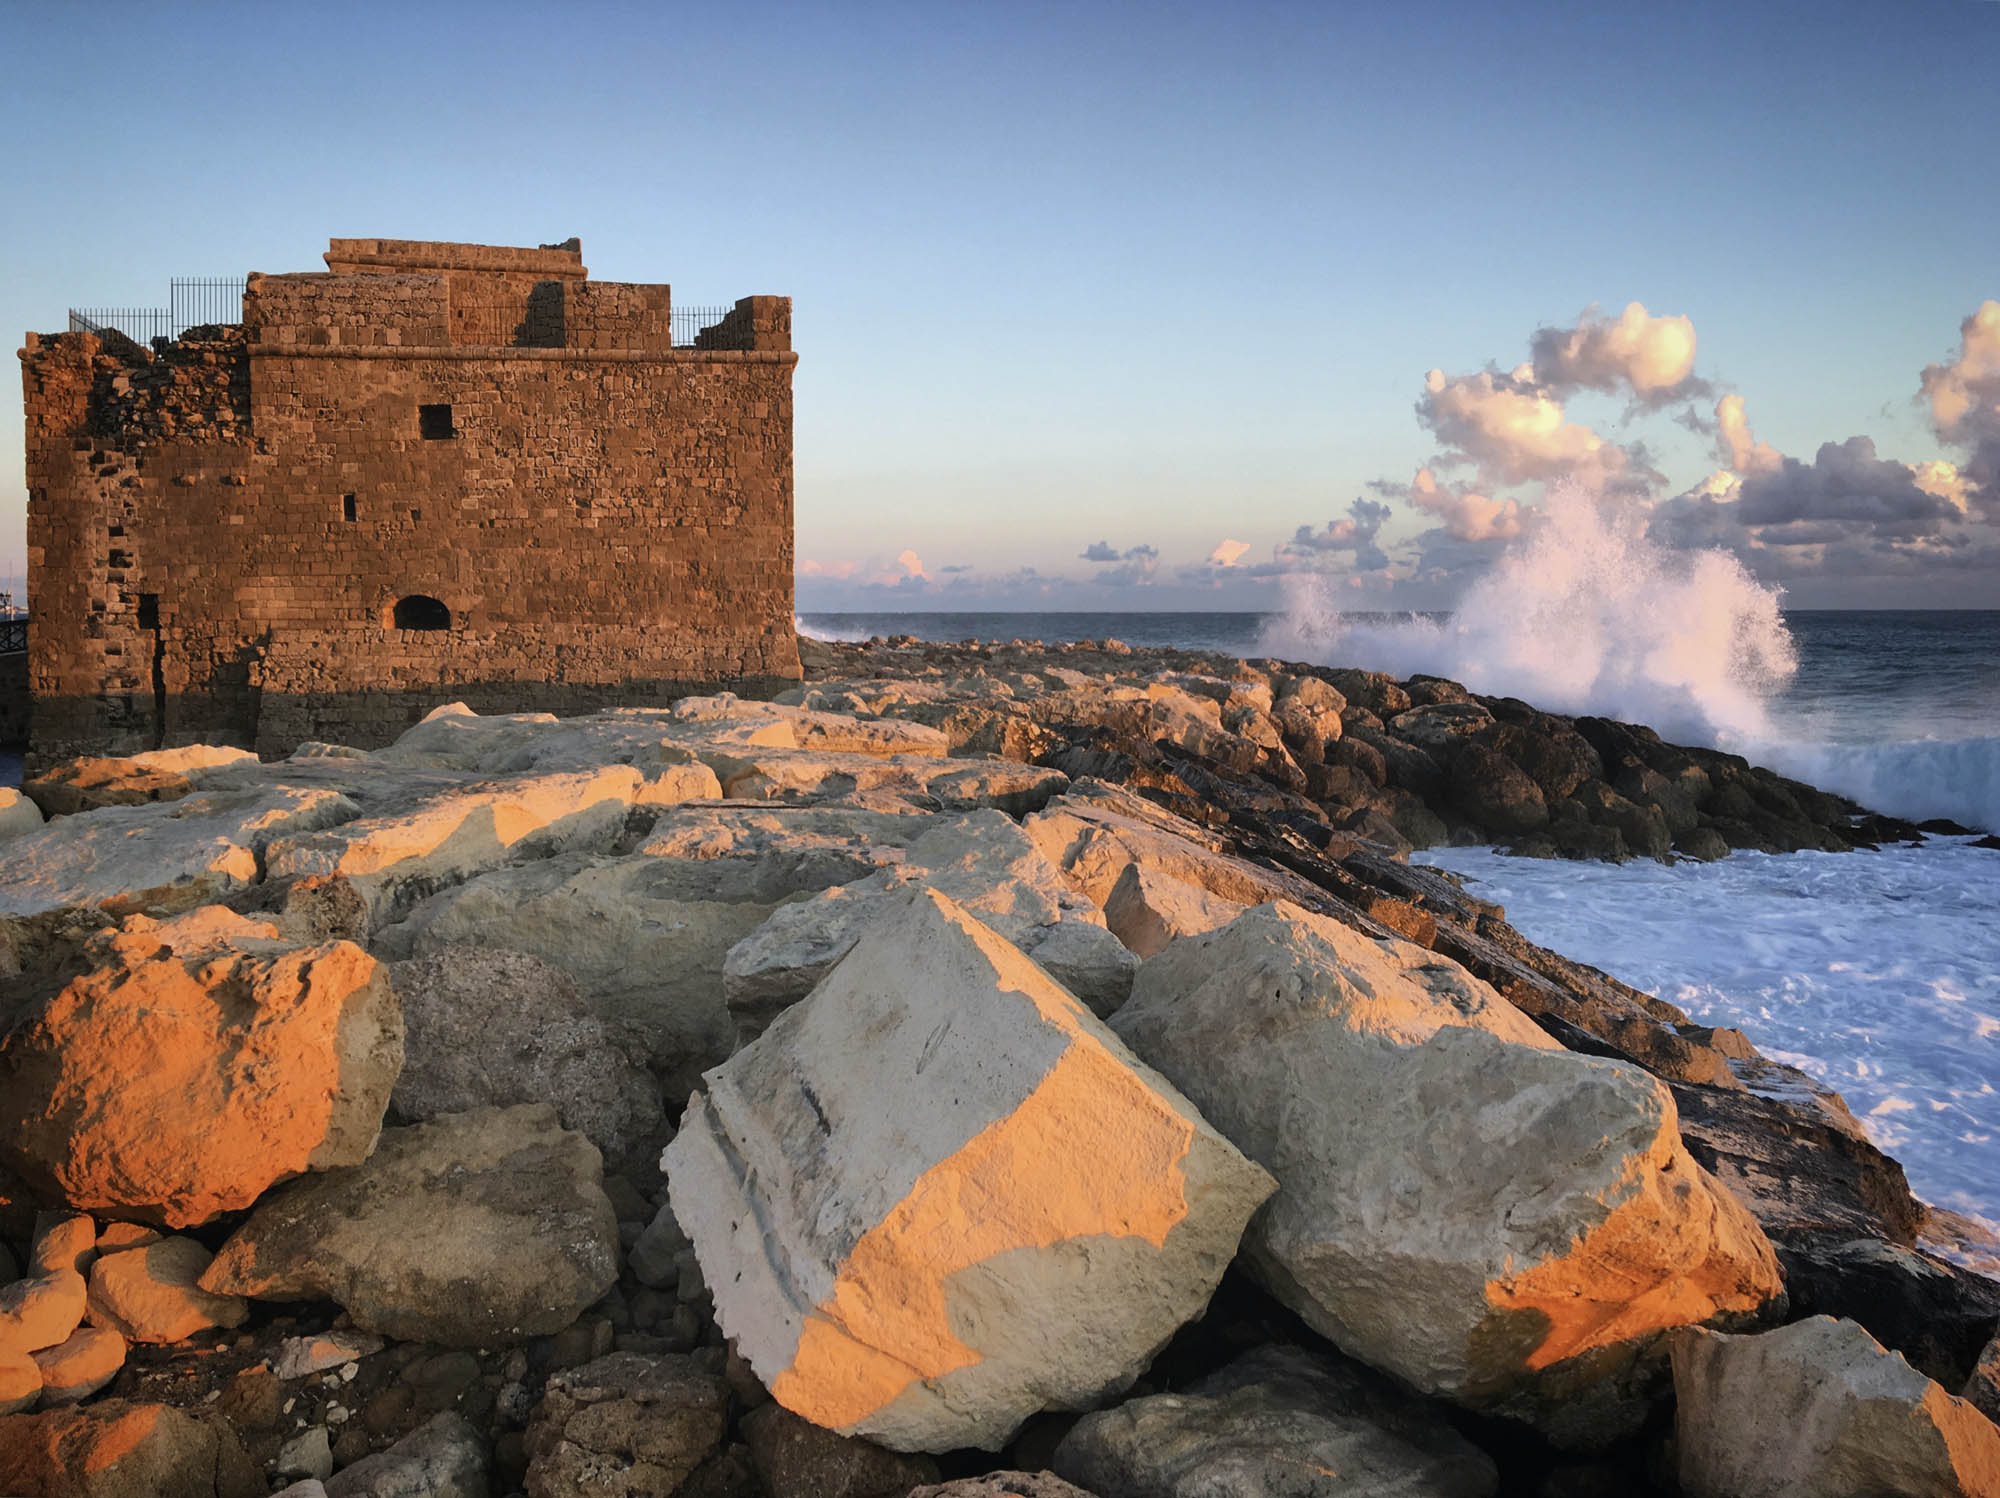 cypr, morze i twierdza nad morzem, piękne miejsce, panorama, widok